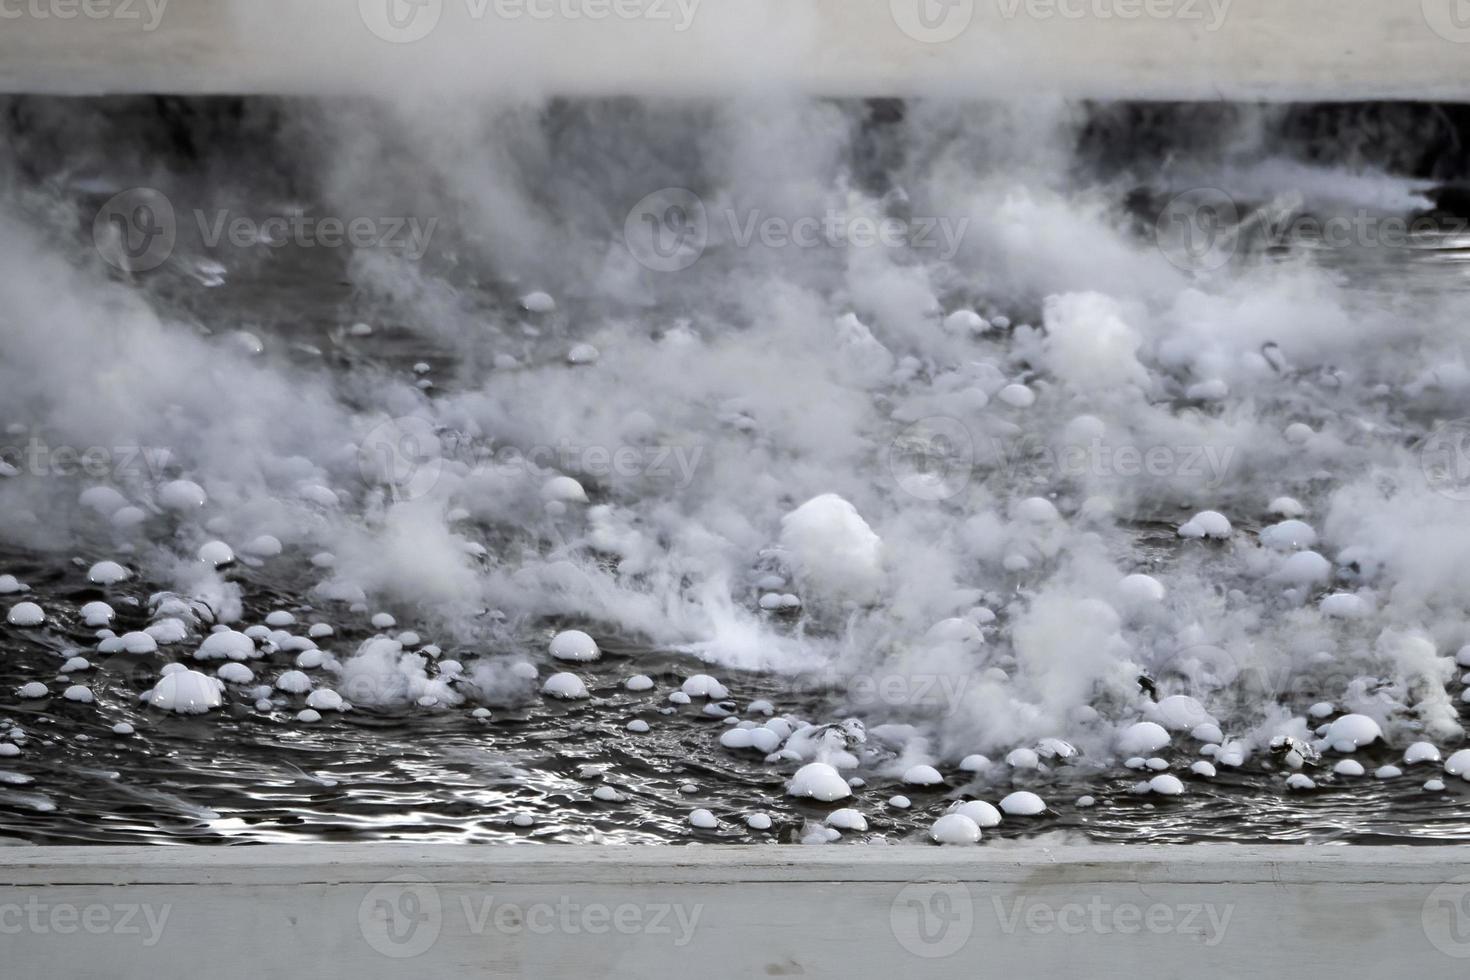 co2 solide dans l'eau faisant des bulles fumée de glace congelée photo